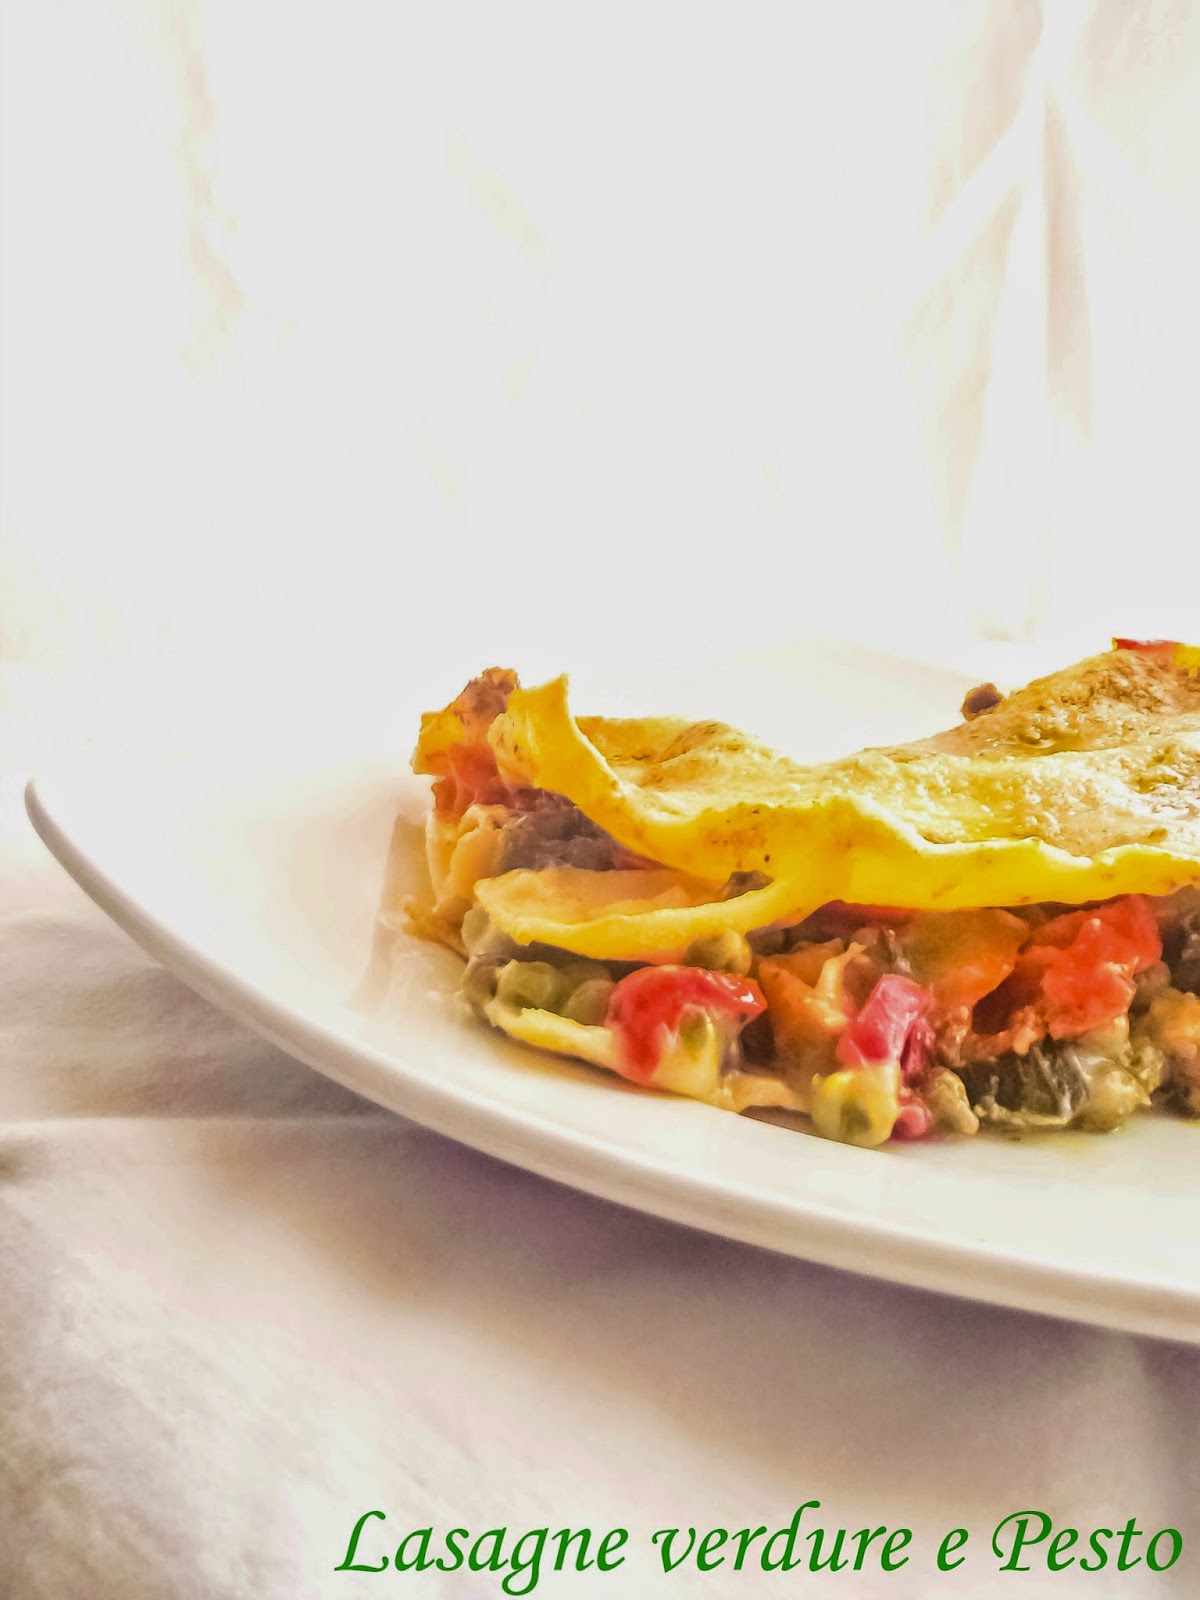 Le Lasagne verdura e pesto e l'importanza di chiamarsi Tettarifatta